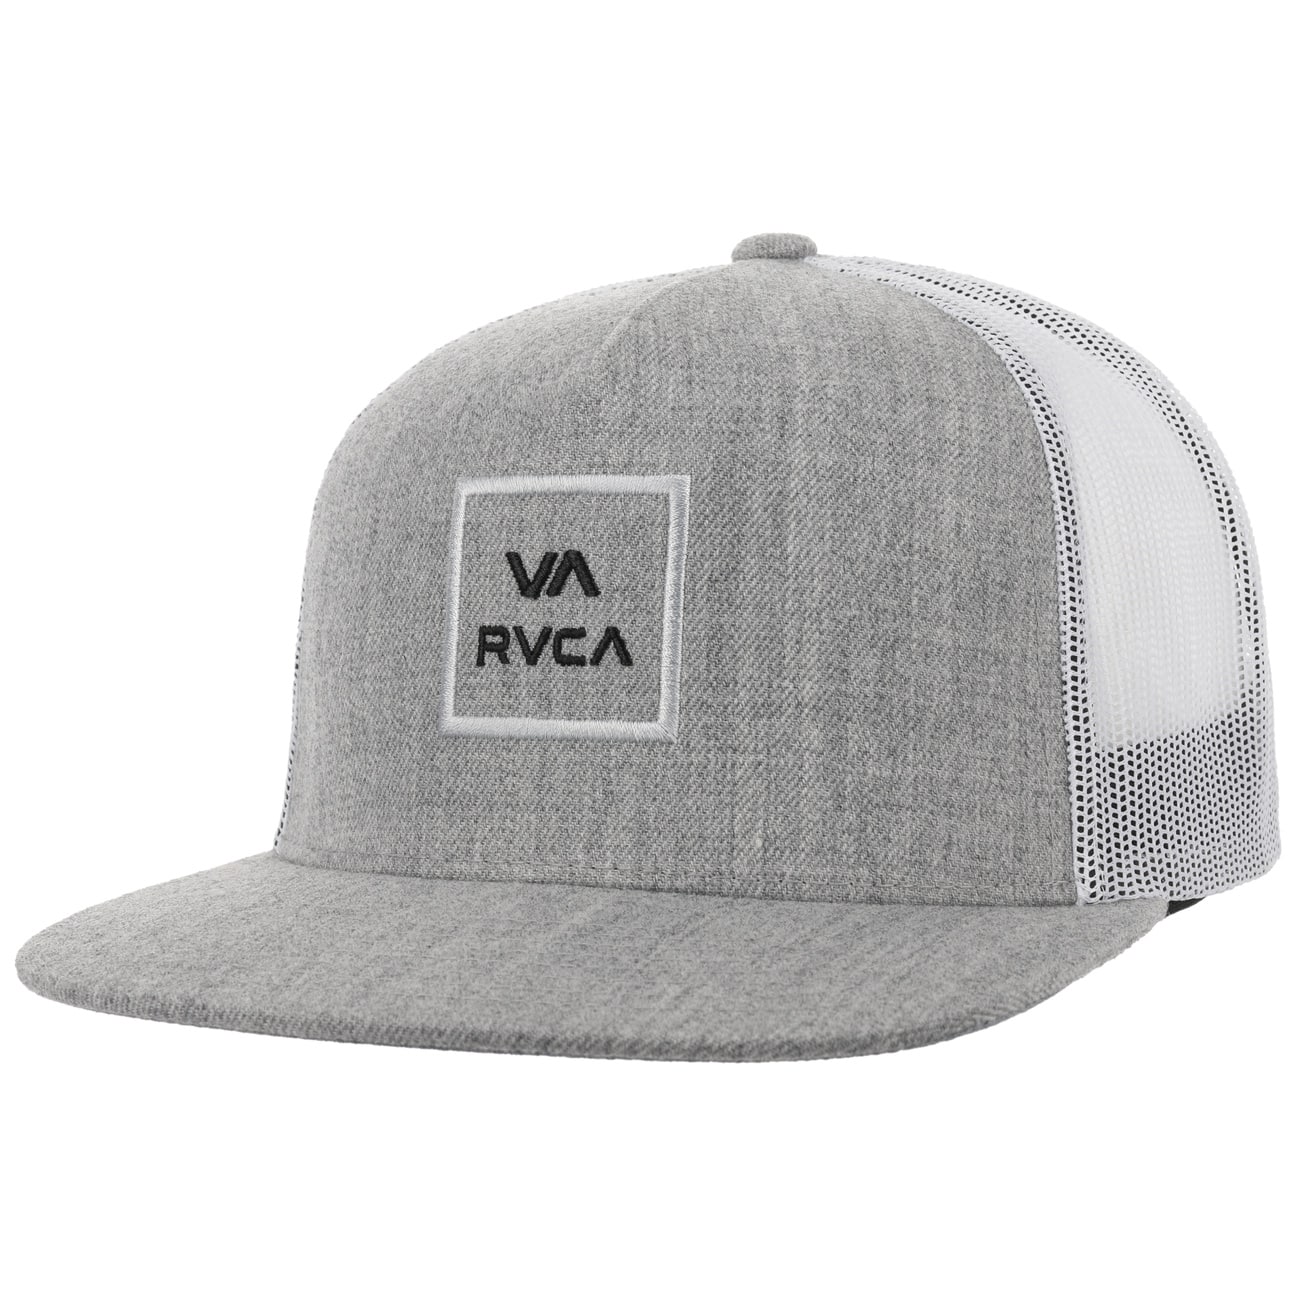 All The Way Trucker Cap by RVCA von RVCA